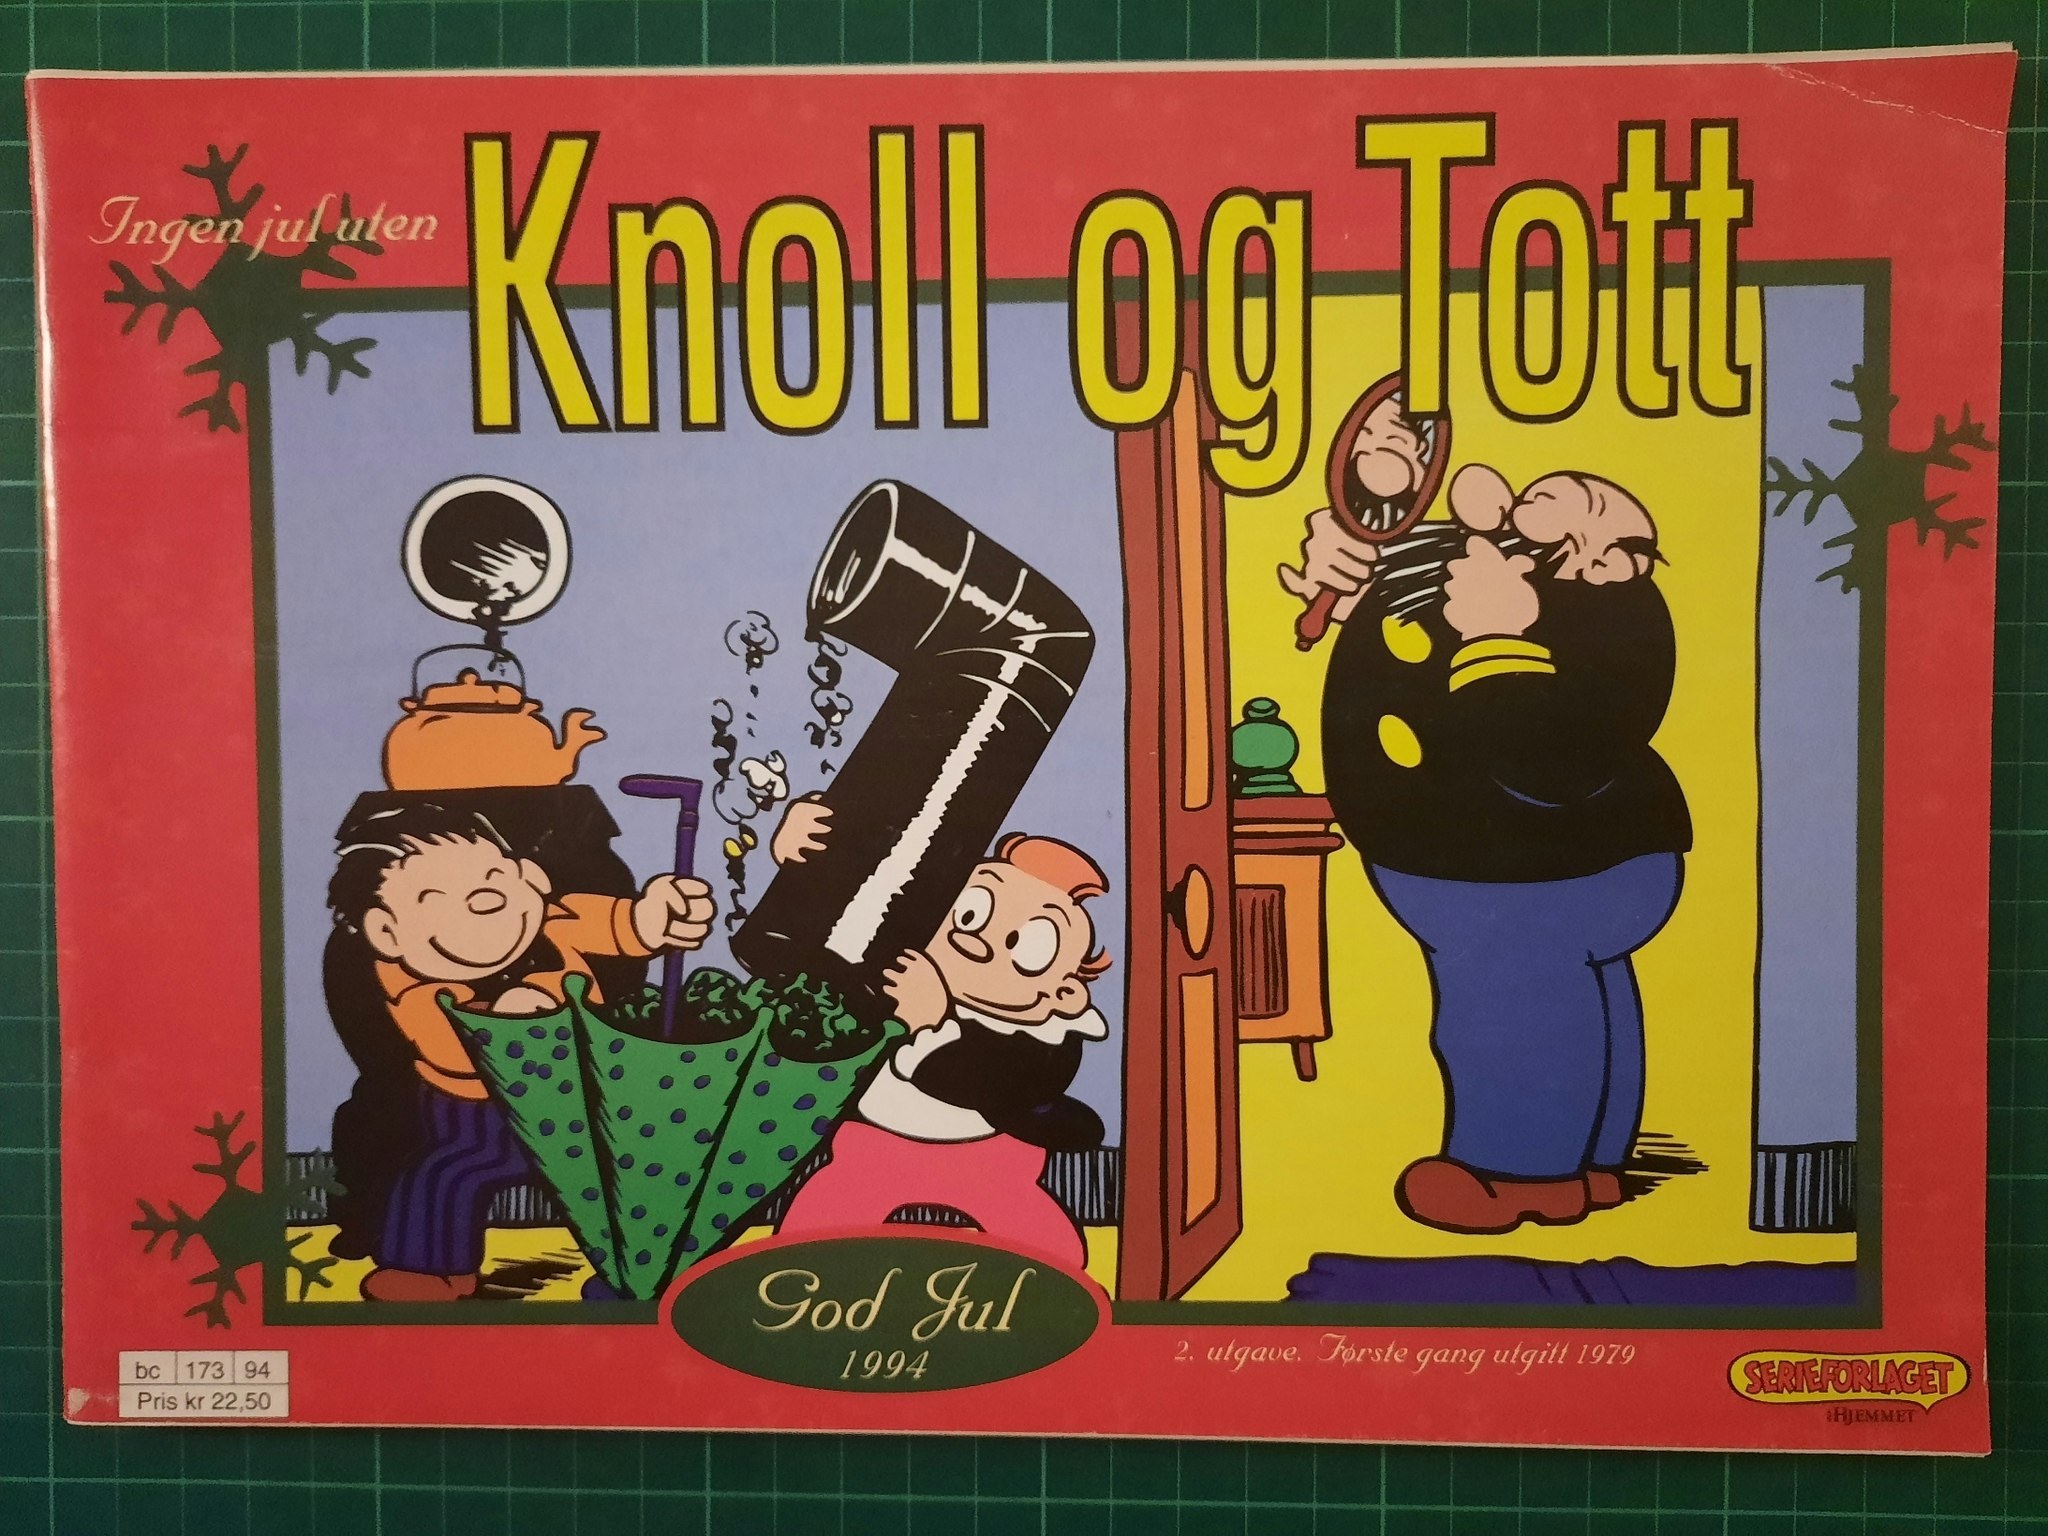 Knoll og Tott 1994